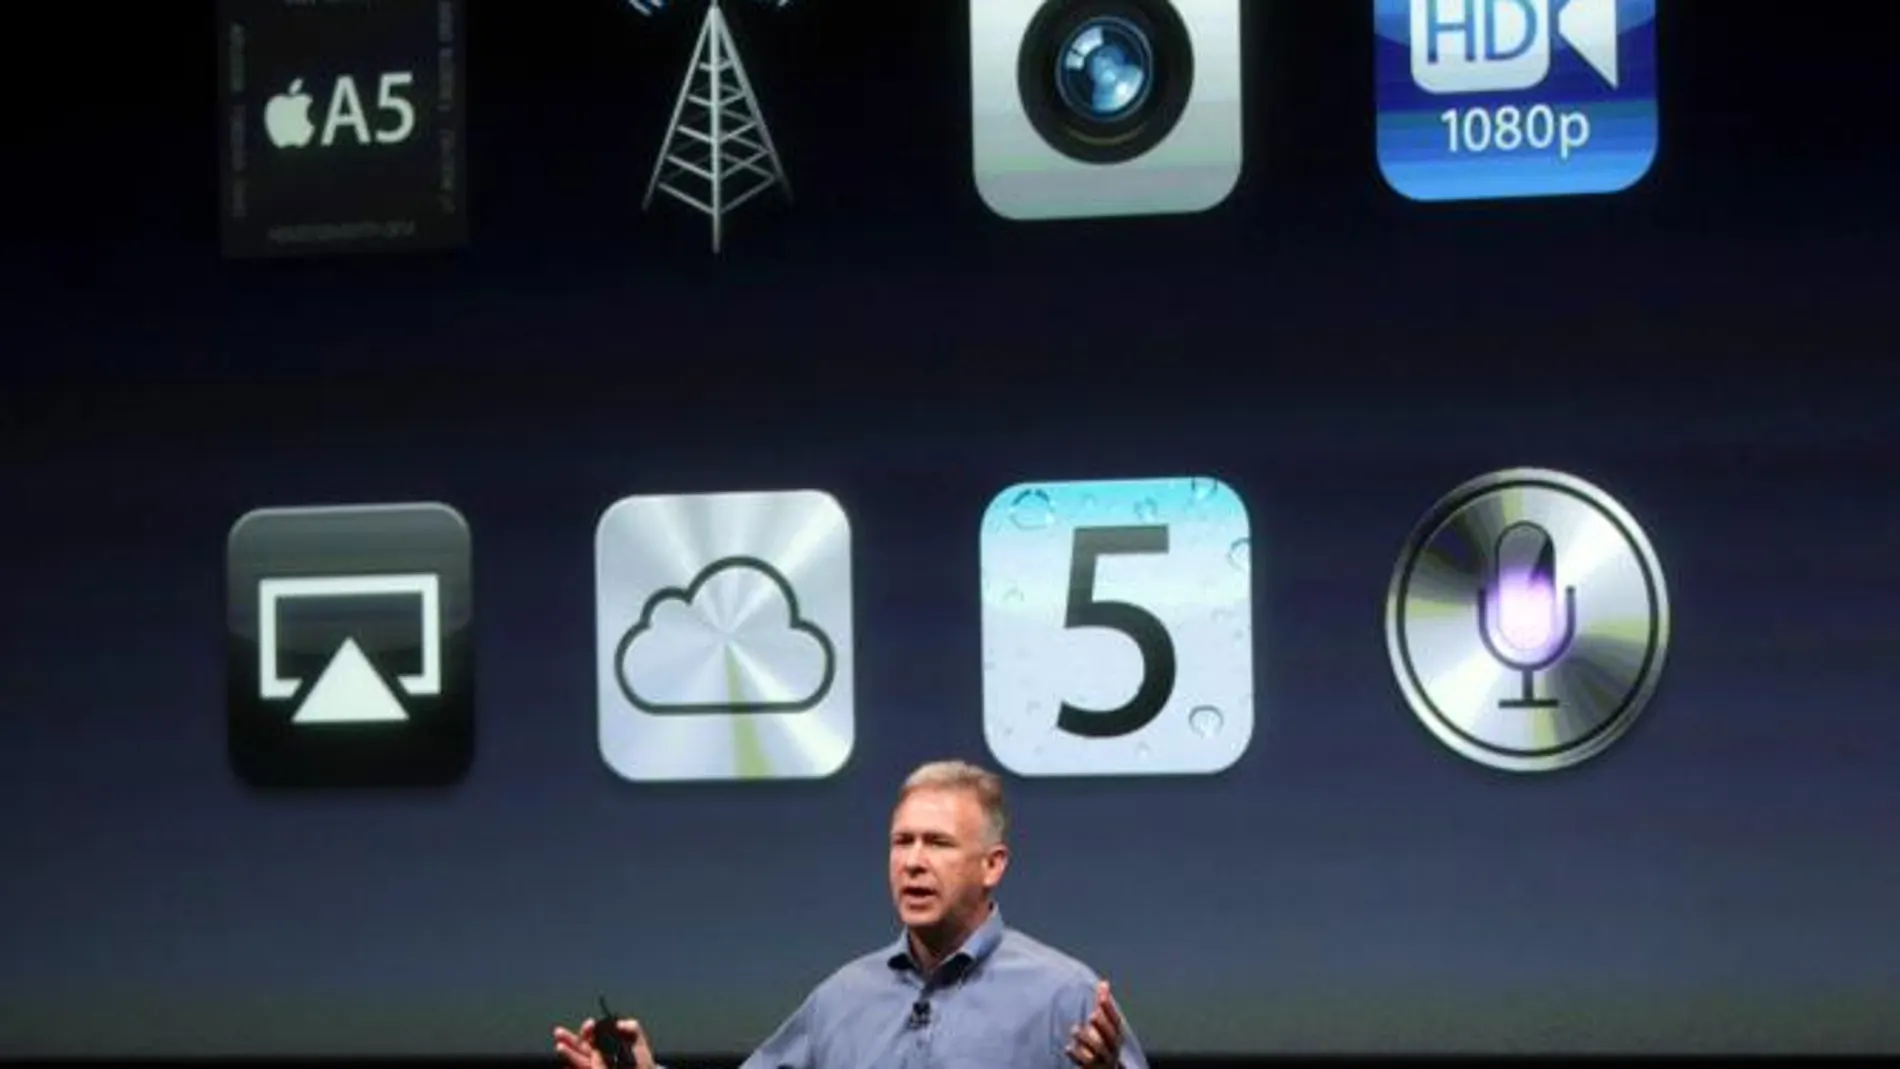 Apple anuncia el iPhone 4S, siete veces más rápido que el modelo original